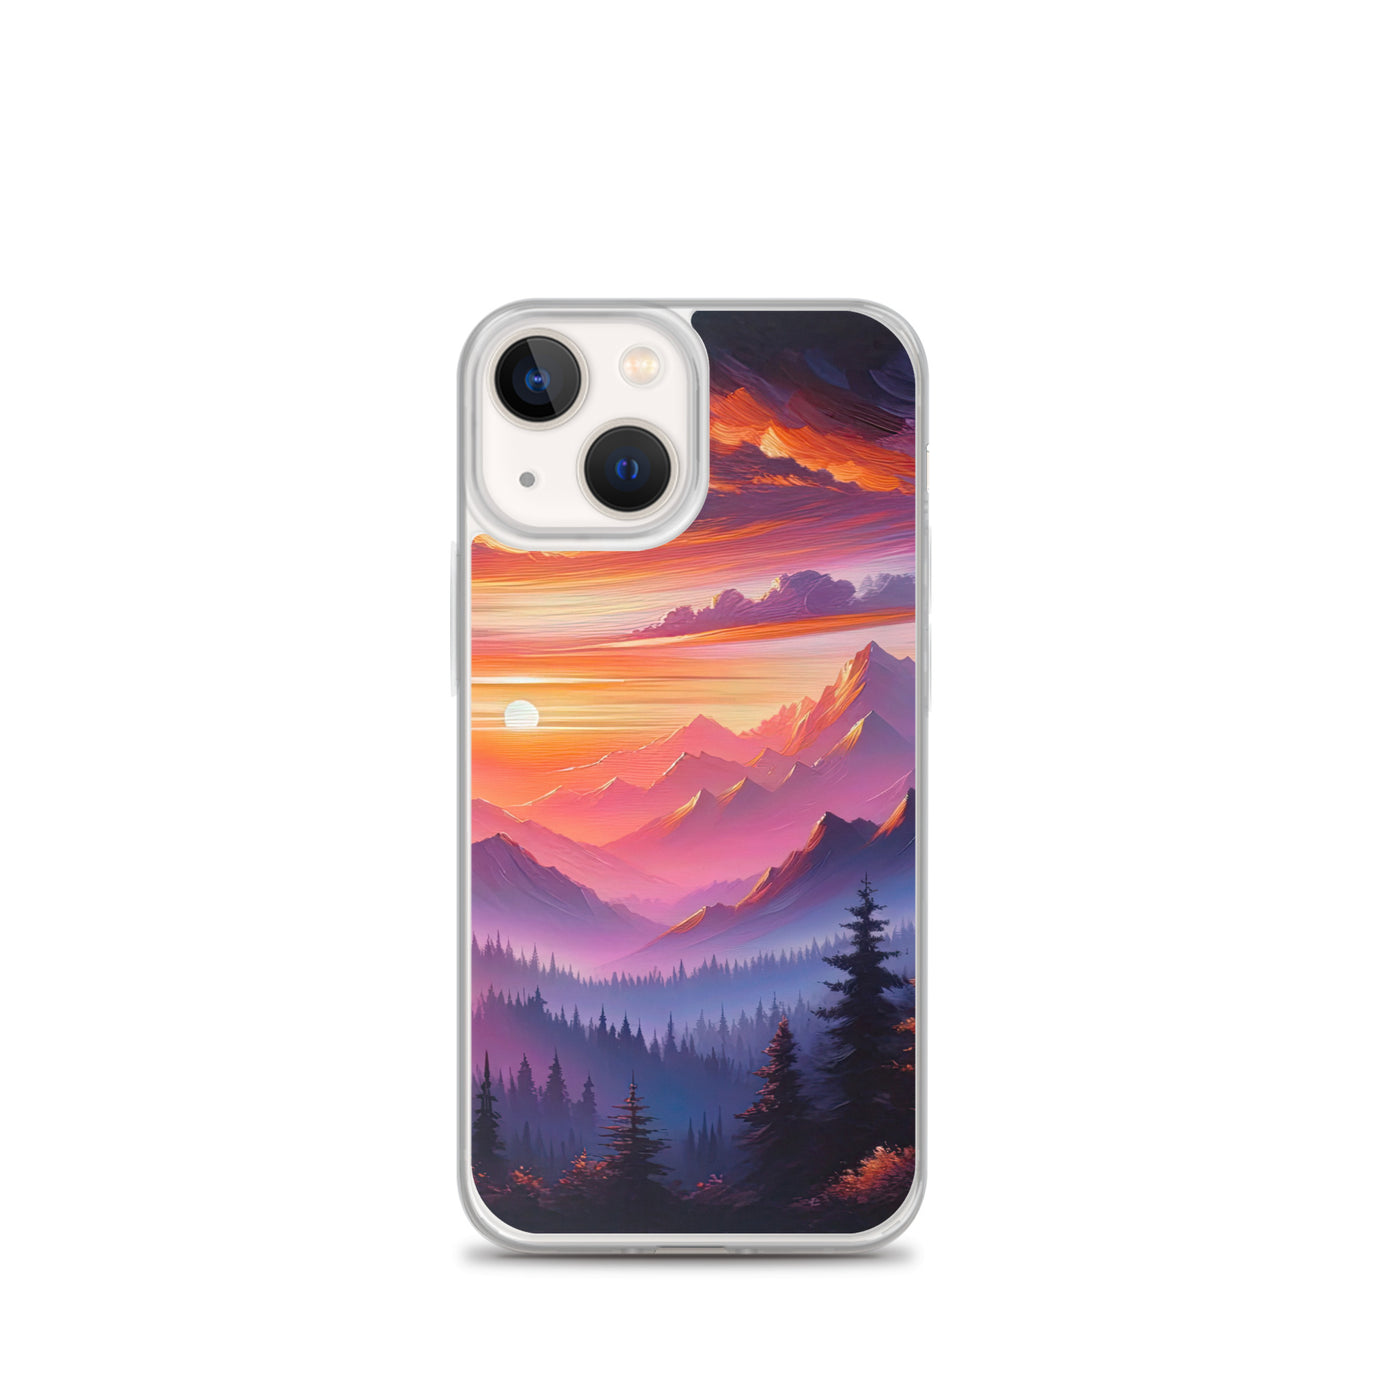 Ölgemälde der Alpenlandschaft im ätherischen Sonnenuntergang, himmlische Farbtöne - iPhone Schutzhülle (durchsichtig) berge xxx yyy zzz iPhone 13 mini